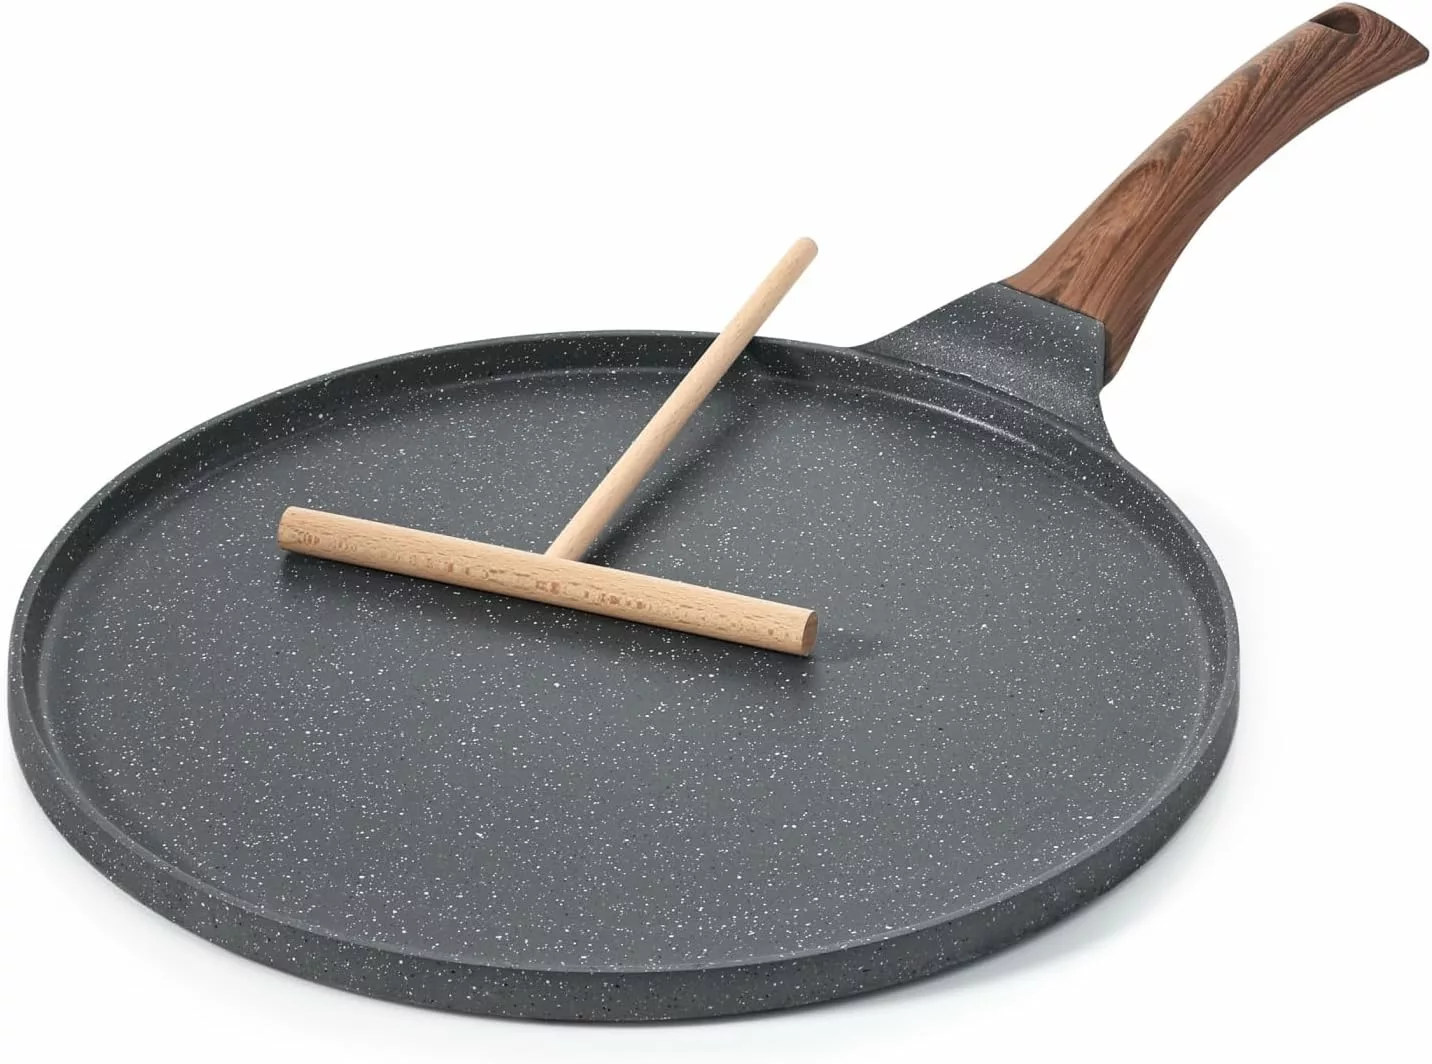 MICHELANGELO Nonstick Granite Frying Pan Set, Multi-Purpose Nonstick Stone  Frying Pan Set With Heat-Resistant Bakelite Handle